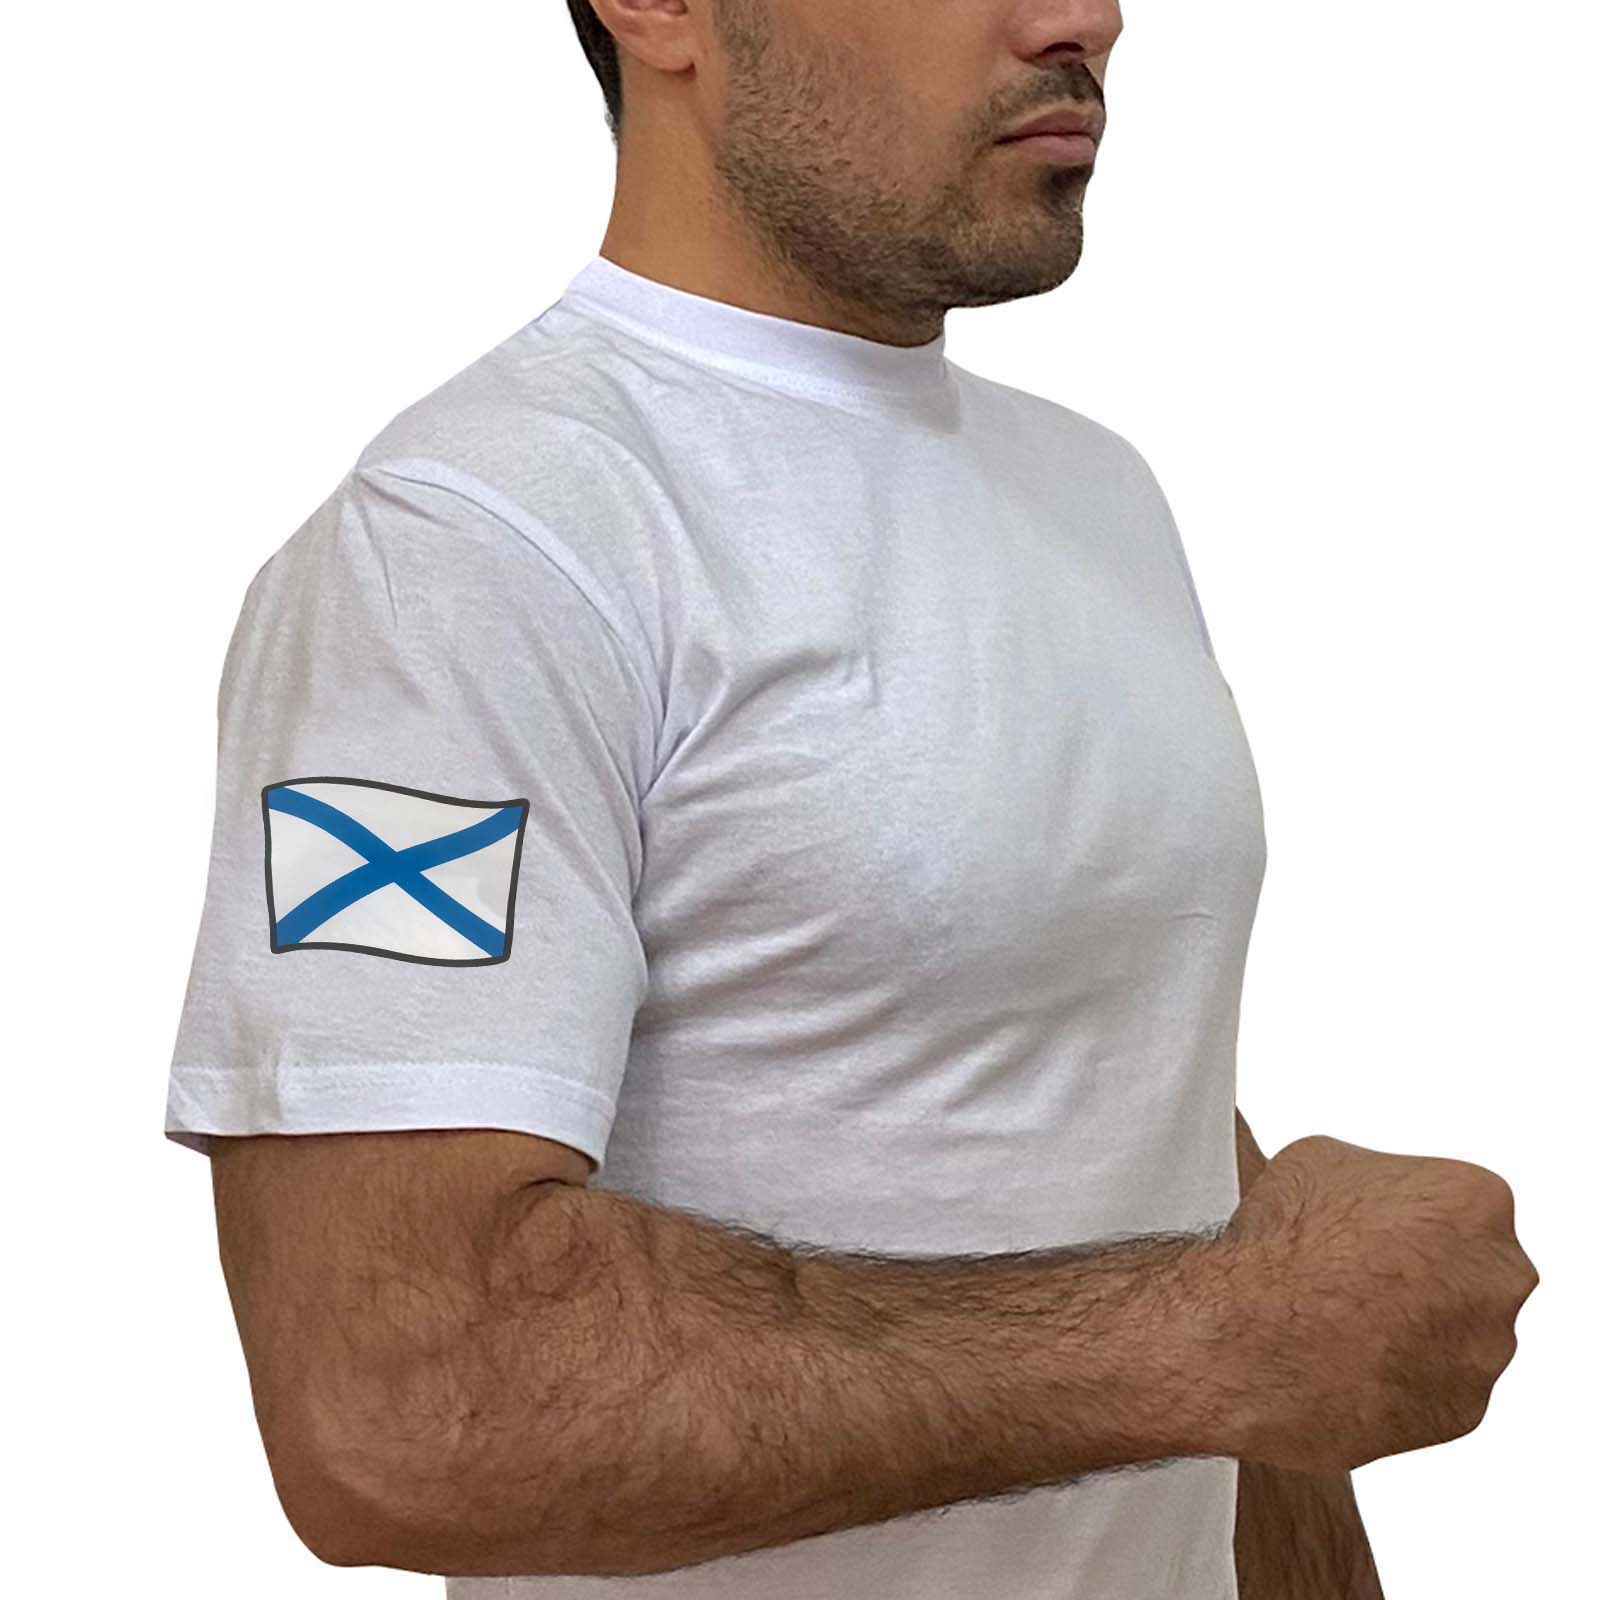 Купить мужскую белую футболку с термотрансфером Андреевский флаг выгодно